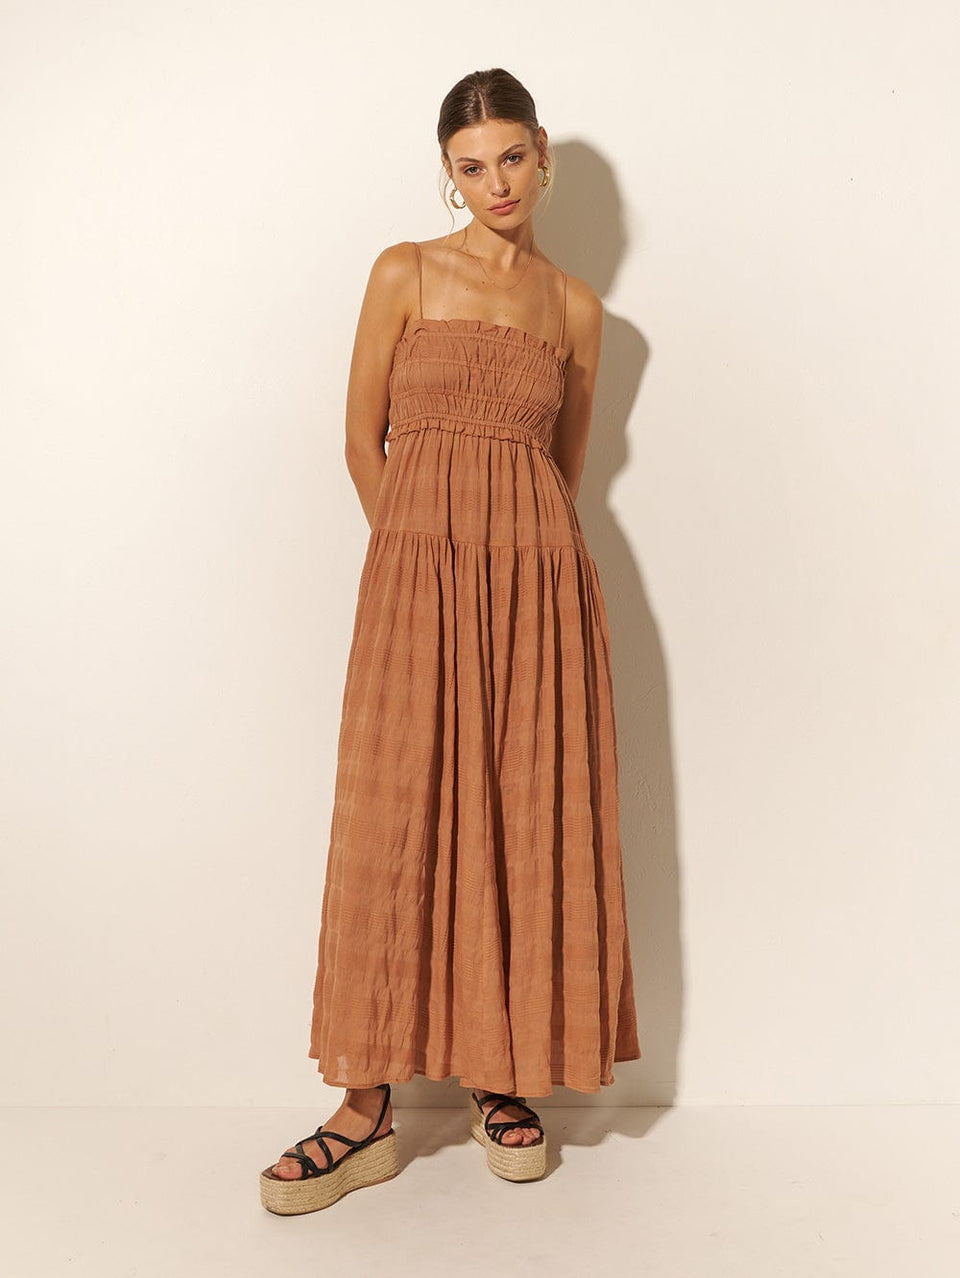 KIVARI Rylan Maxi Dress | Model wears Brown Maxi Dress